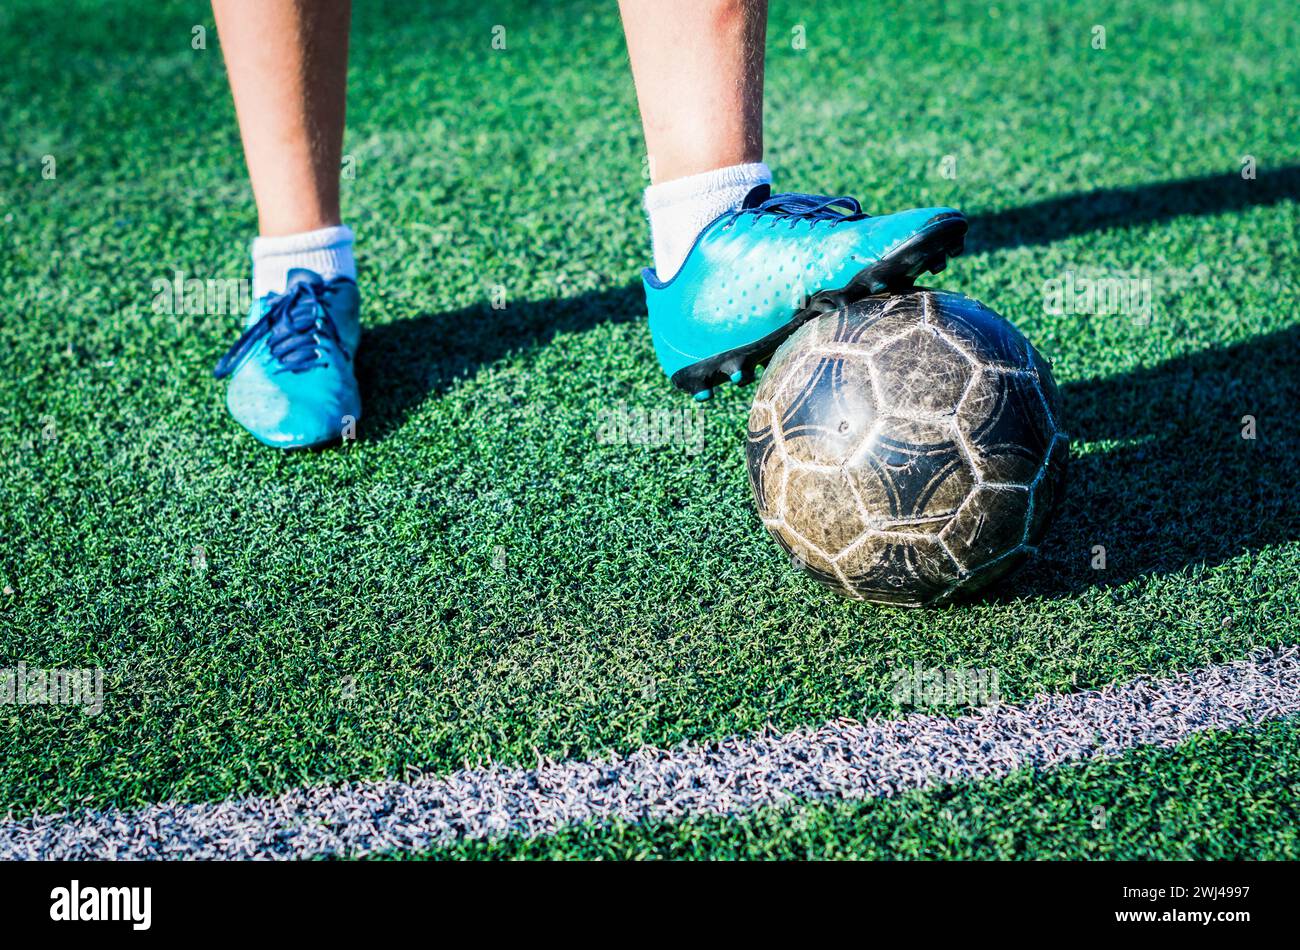 Jambes d'un adolescent joueur de football de rue dans des chaussures de football bleues avec un ballon de football sur un terrain de football vert Banque D'Images